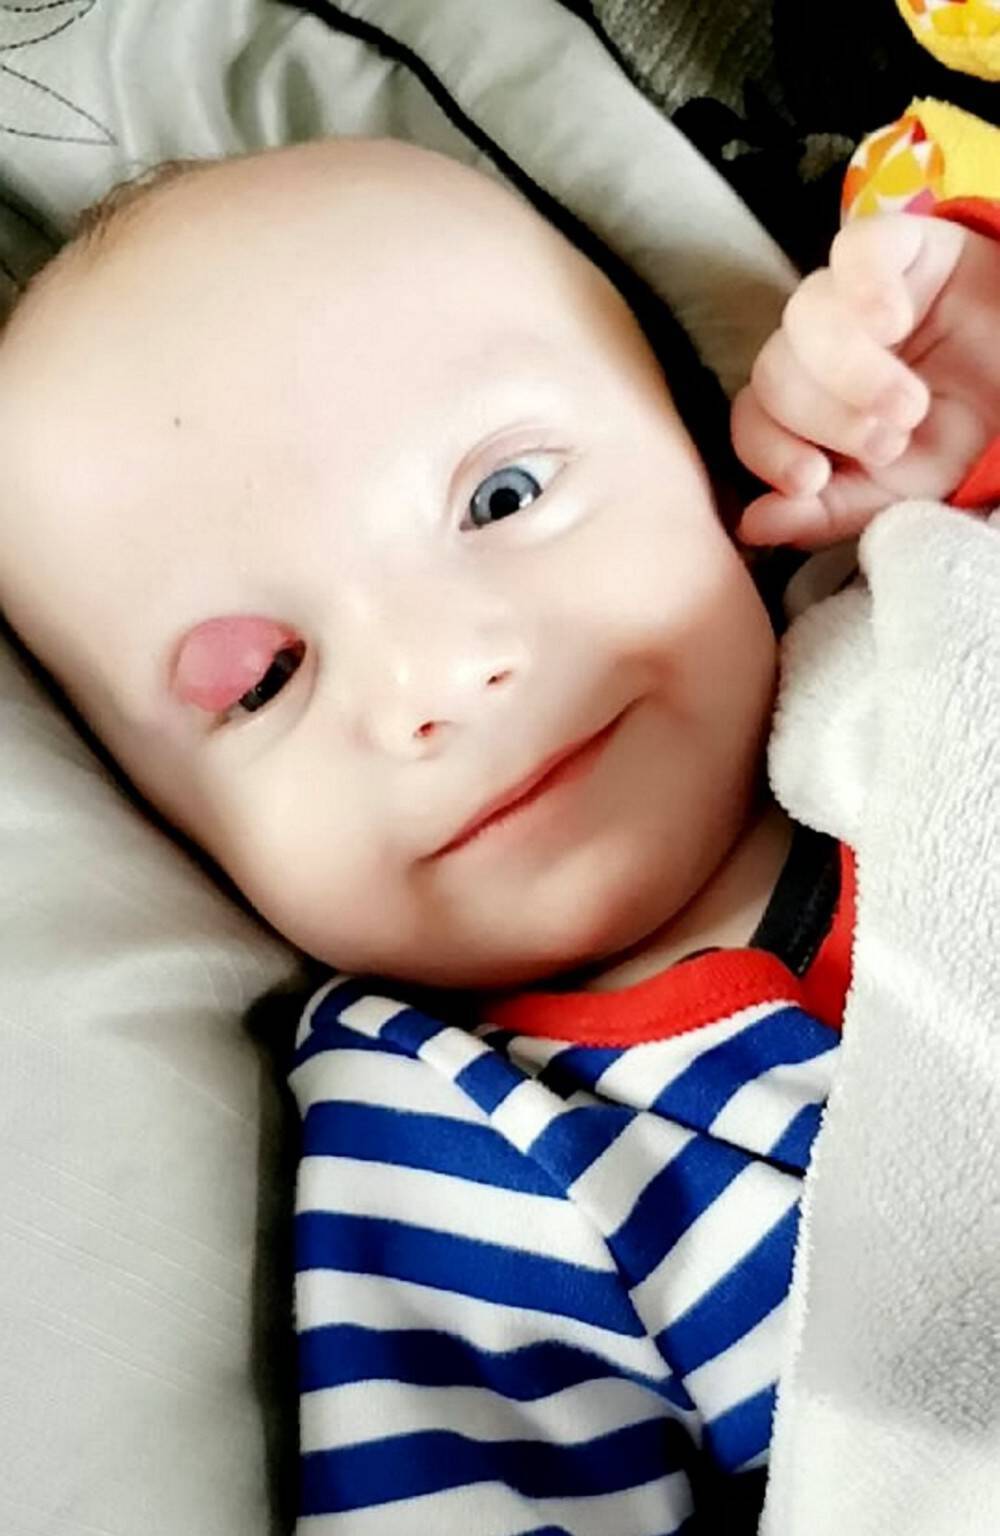 Το πρόωρο μωρό τους γεννήθηκε με έναν μεγάλο όγκο στο μάτι. Όταν οι γιατροί τους απογοήτευσαν, δεν έχασαν την πίστη τους και πέτυχαν το ανέλπιστο!